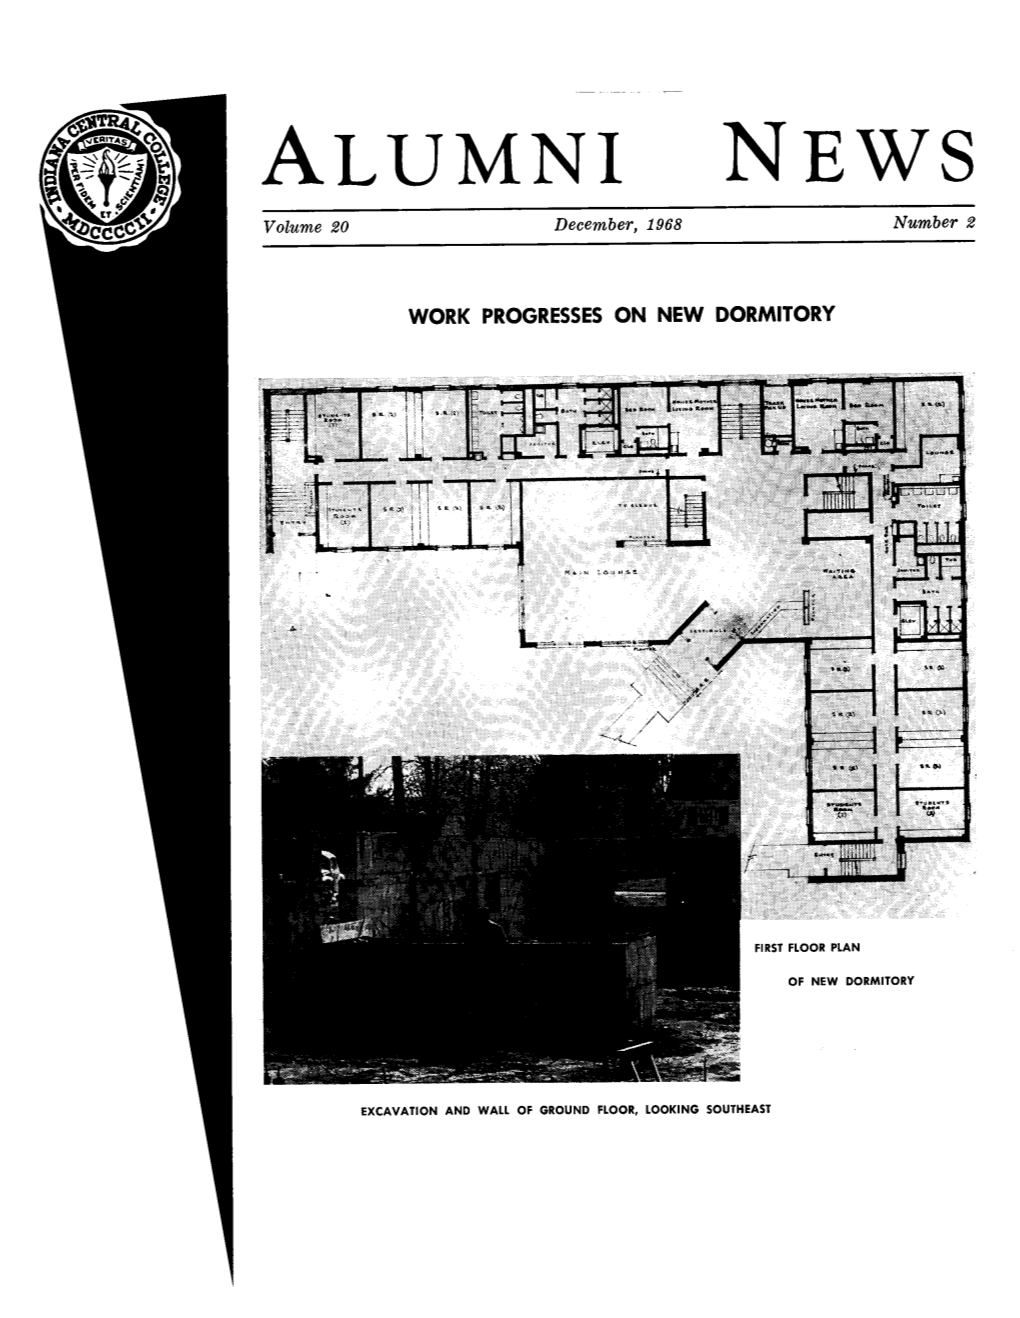 ALUMNI NEWS Volume 20 December, 1968 Number 2